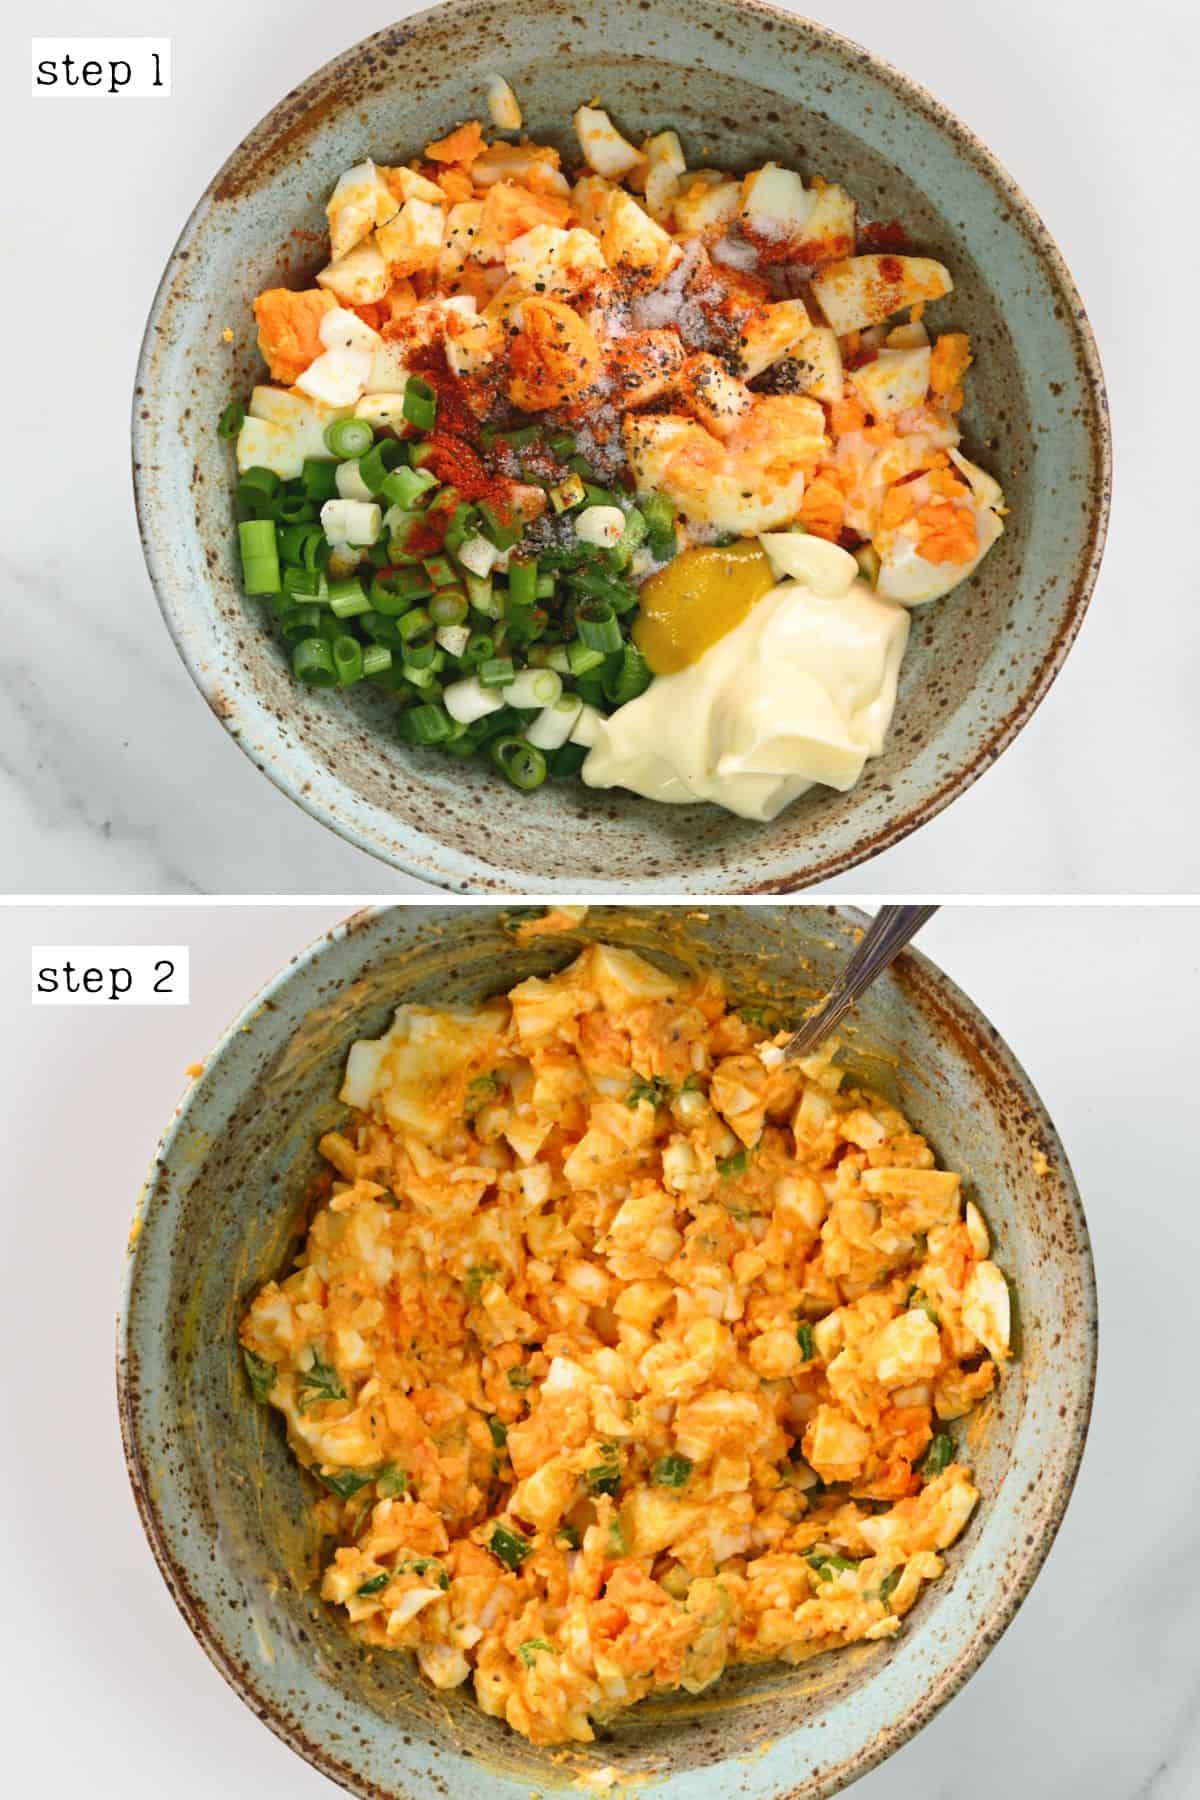 Steps for making egg salad